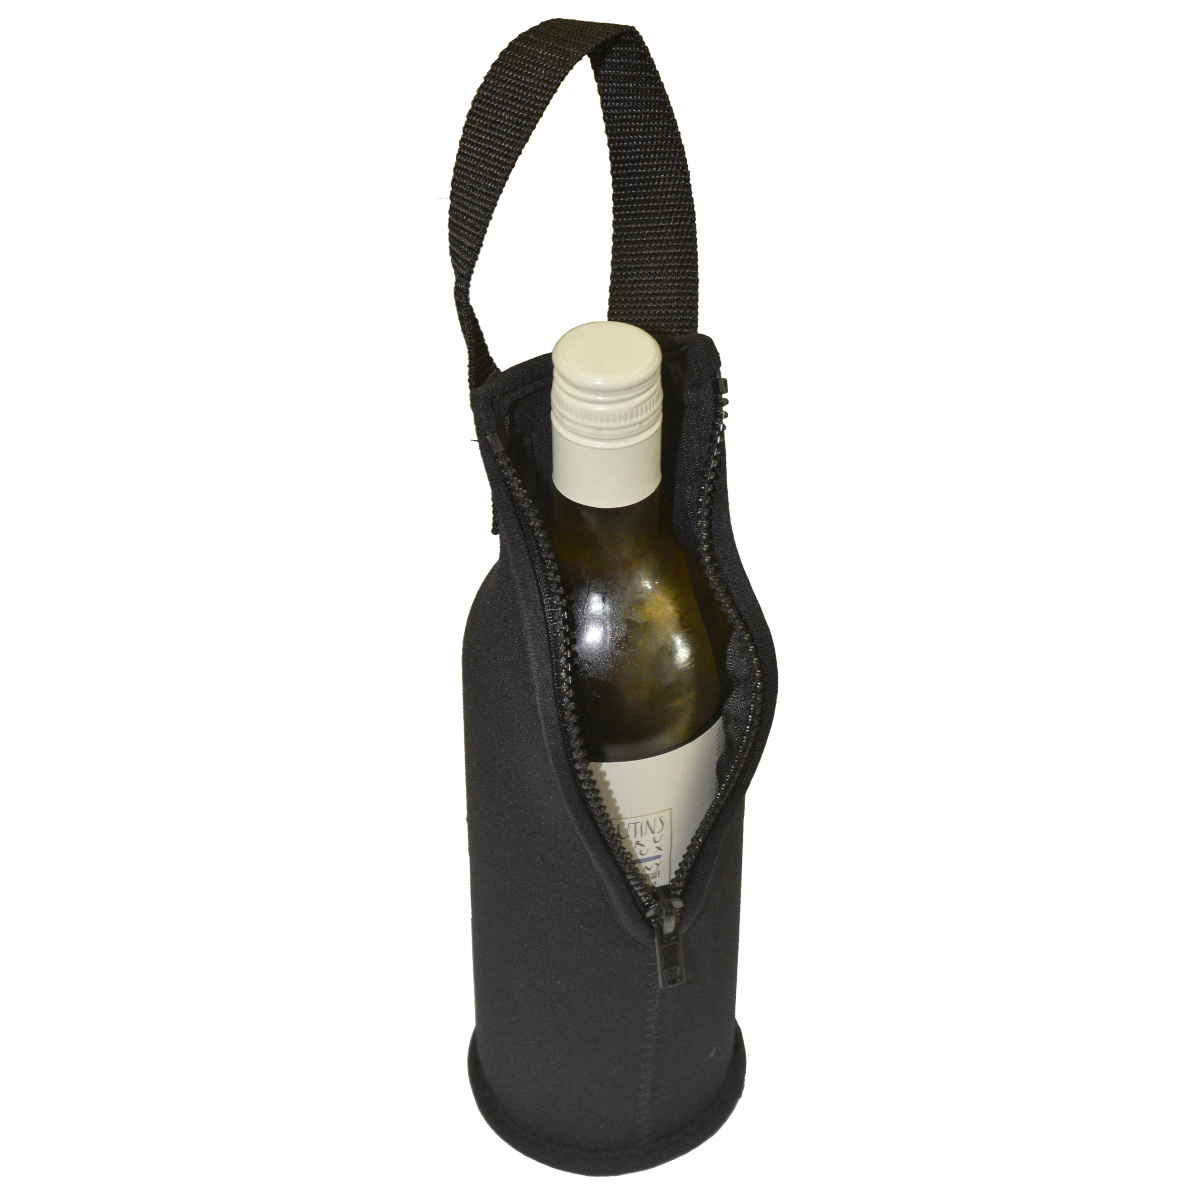 Vinart Isovino protection de bouteille en néoprène noir pour bout.jusqu'a 75